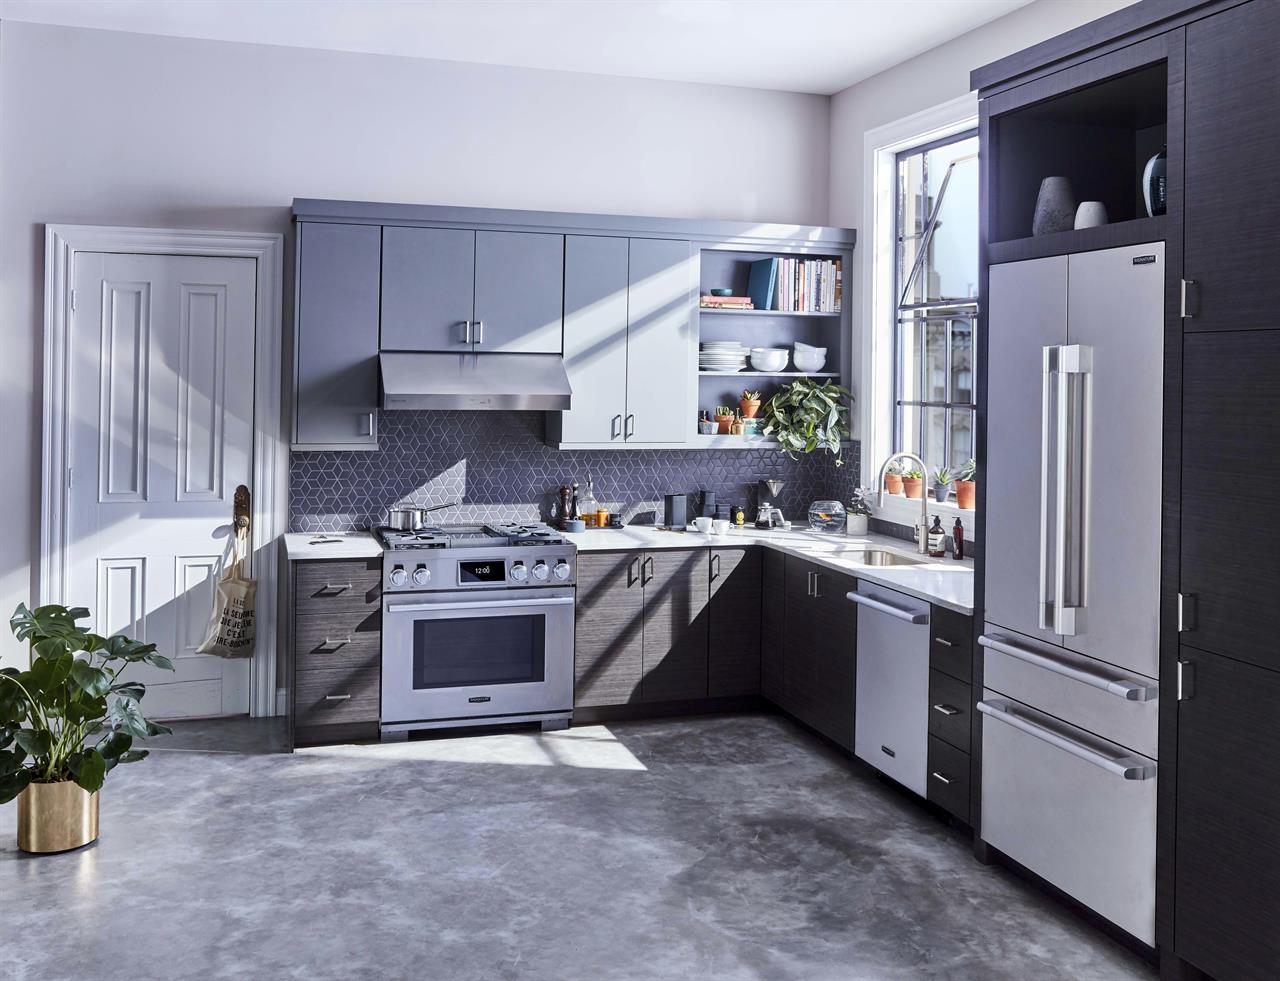 future kitchen design smaller space efficient